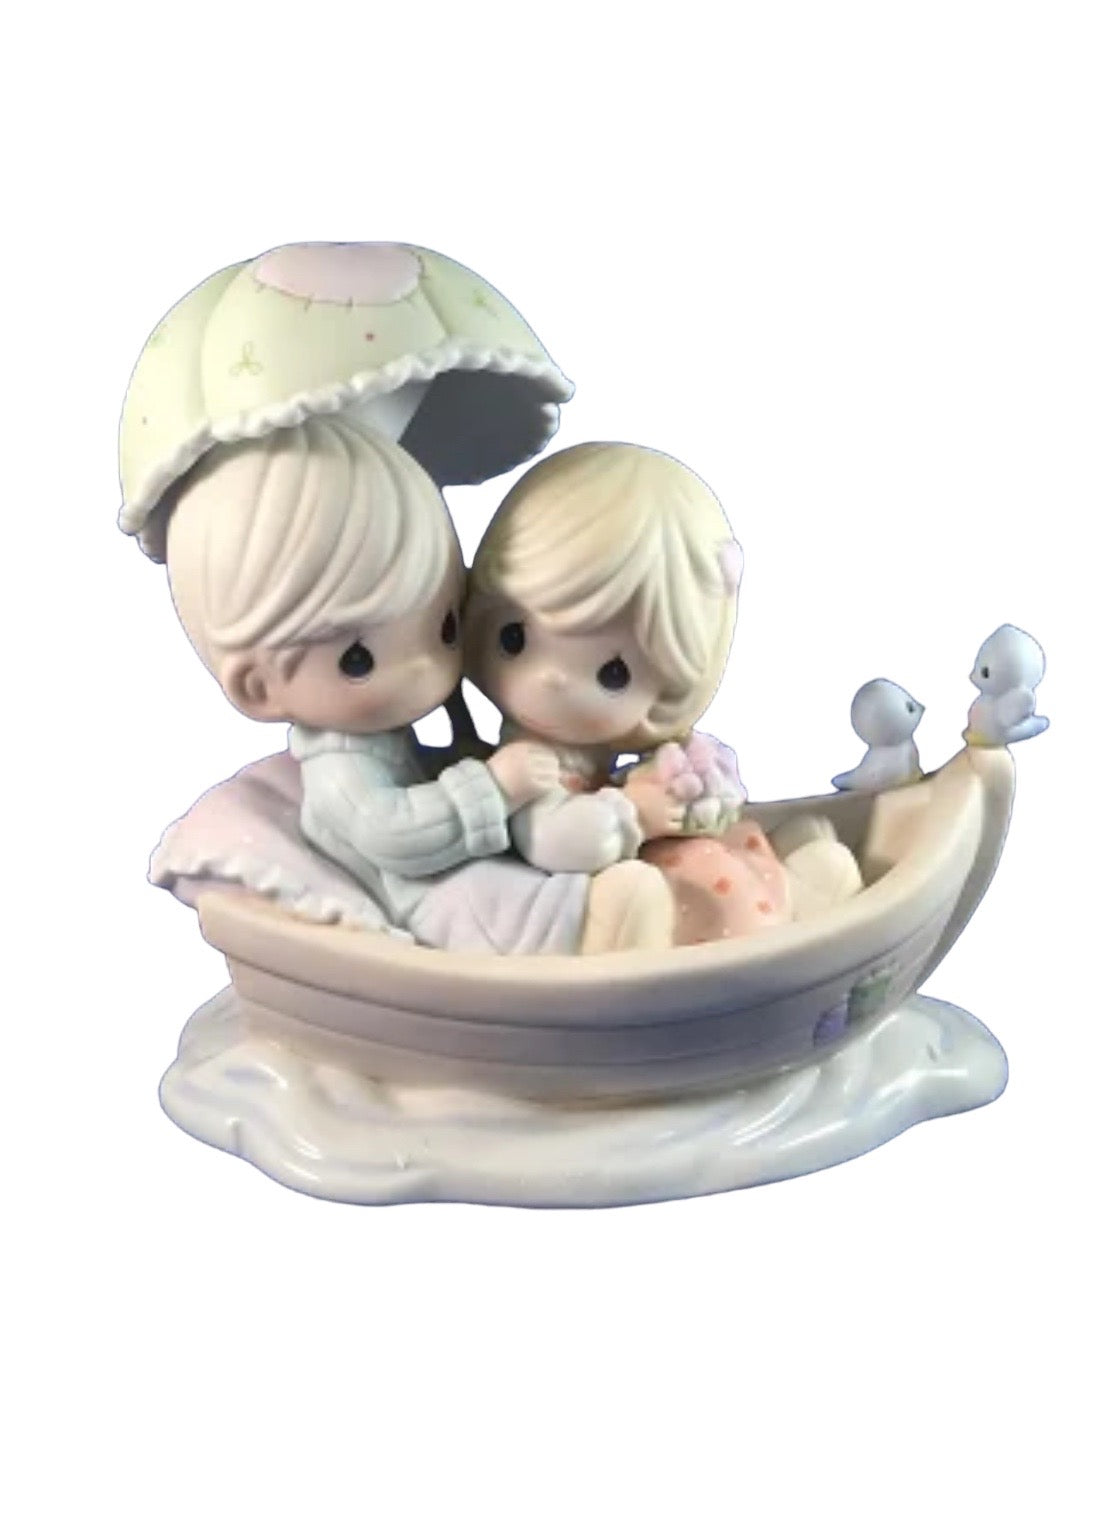 My Dream Boat  - Precious Moment Figurine